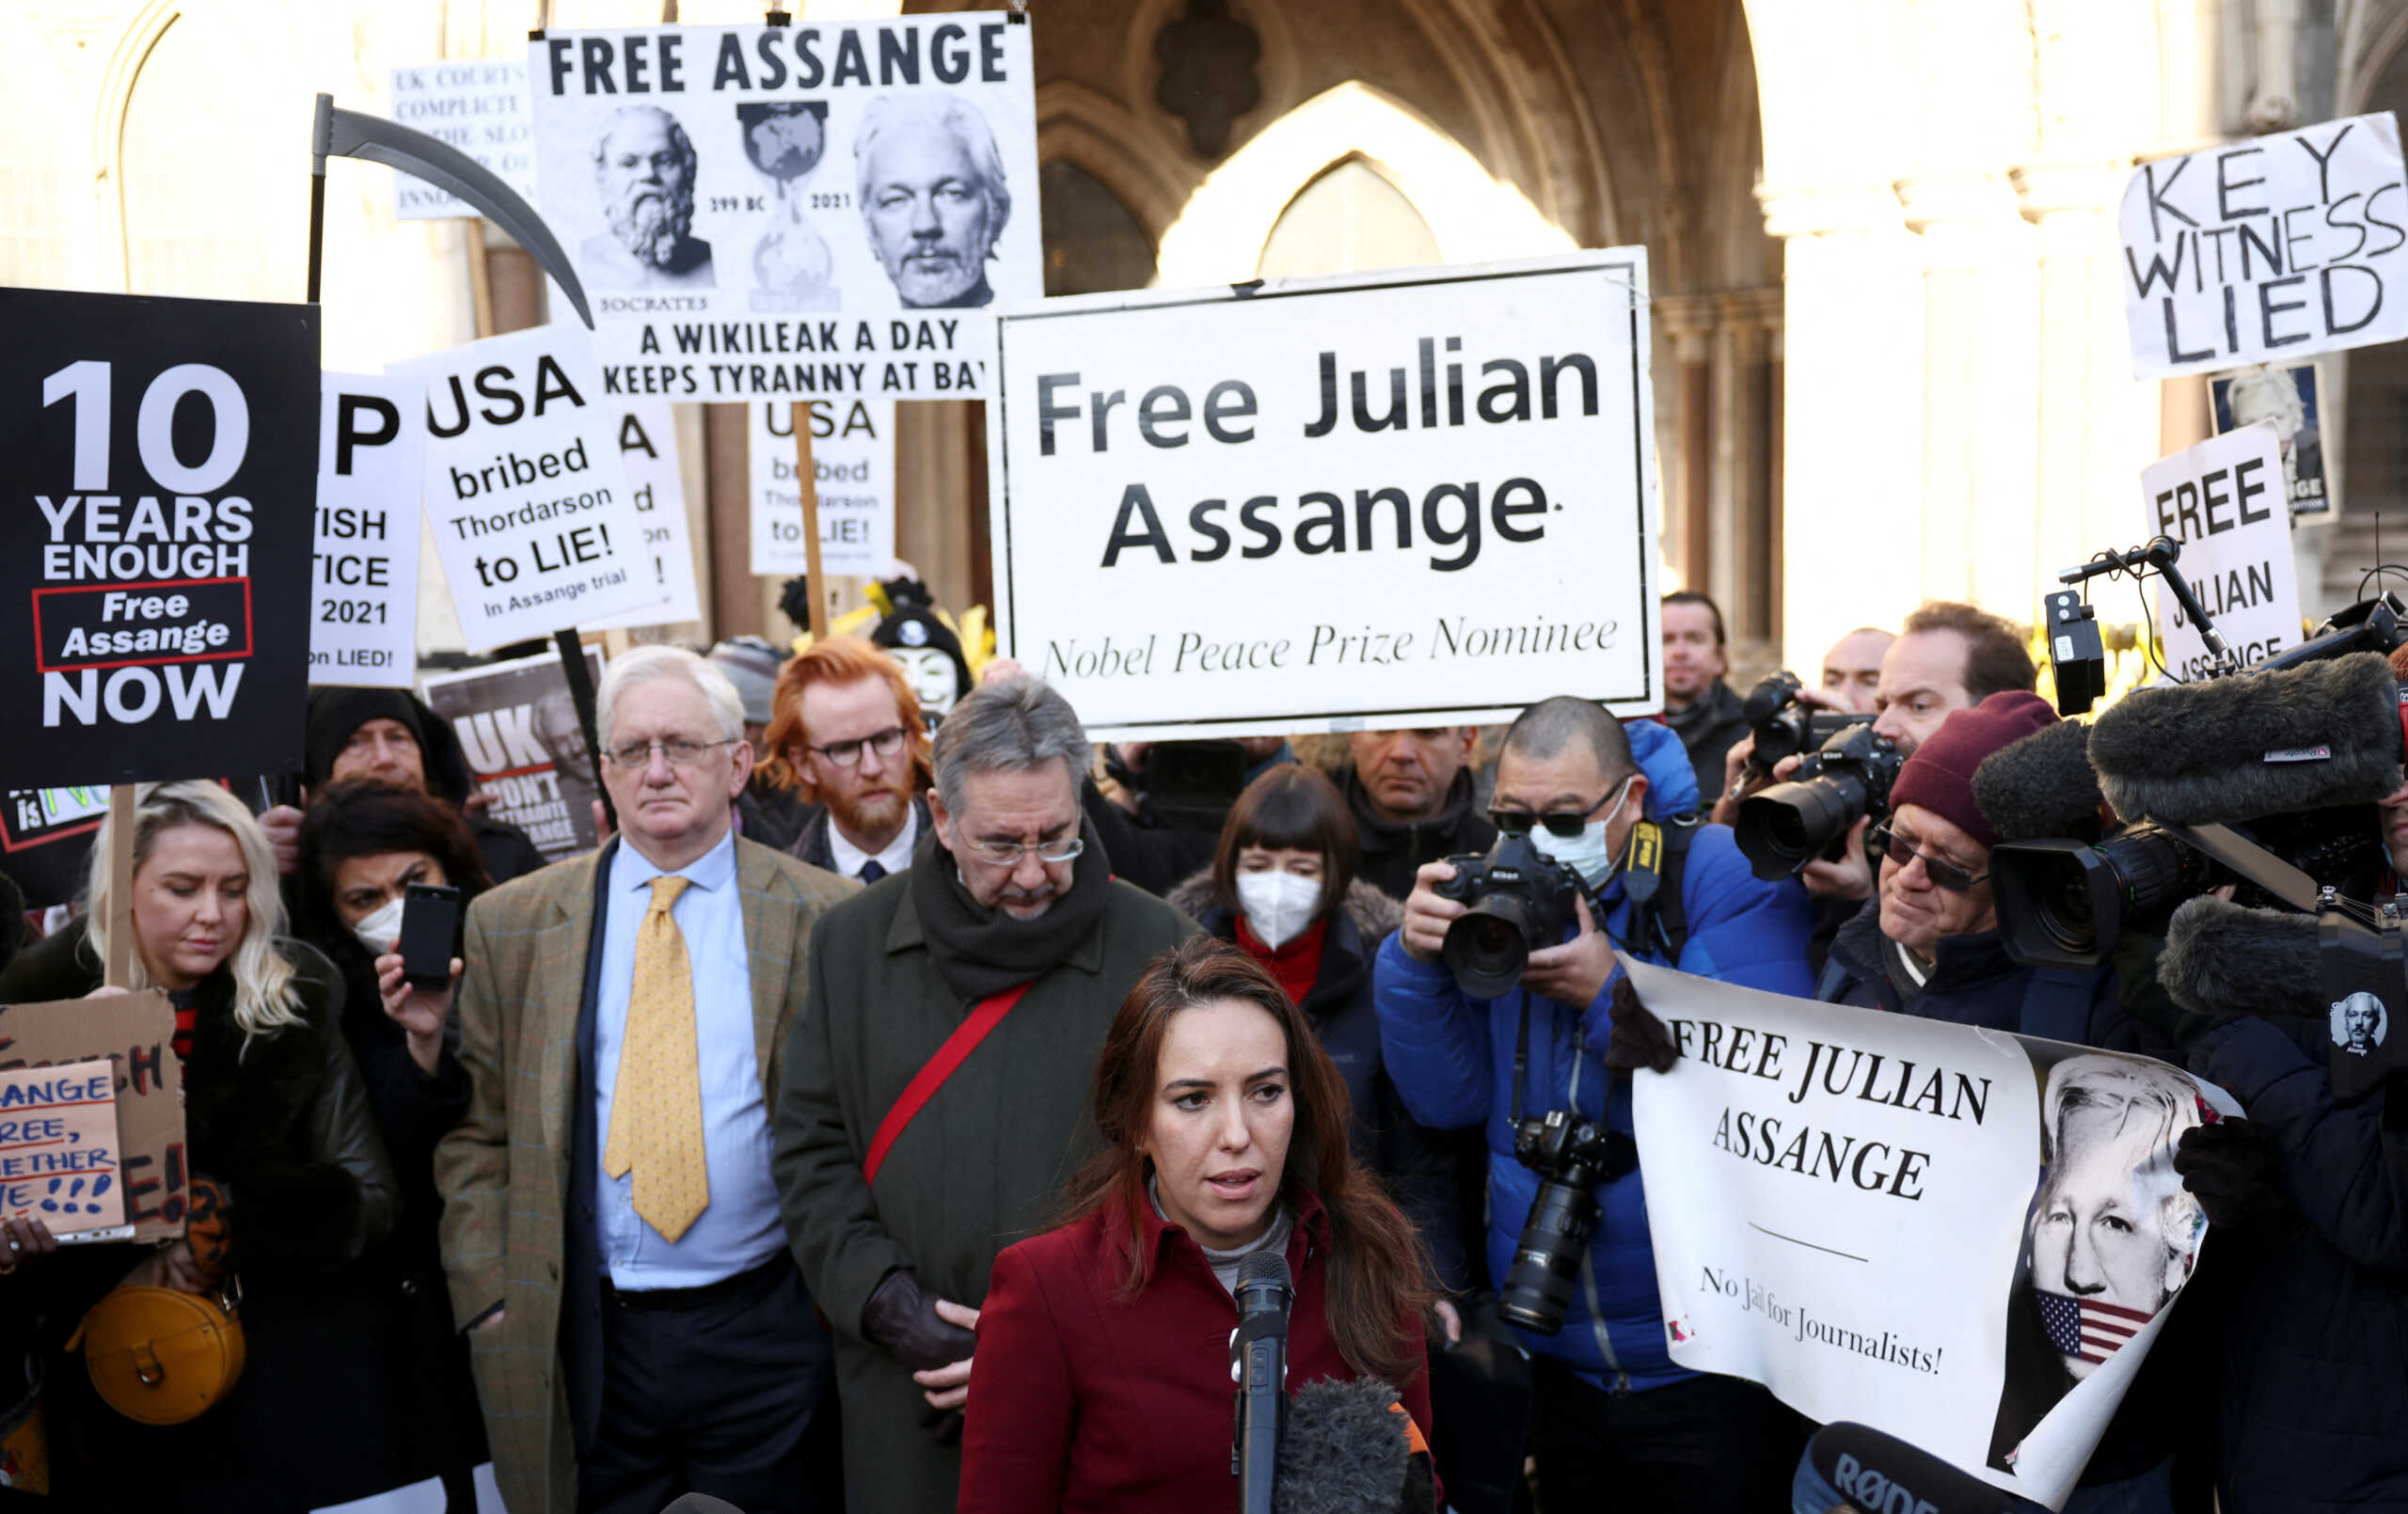 Τζούλιαν Ασάνζ: Οι δικηγόροι του προσέφυγαν στο Ευρωπαϊκό Δικαστήριο Δικαιωμάτων του Ανθρώπου για να μην εκδοθεί στις ΗΠΑ